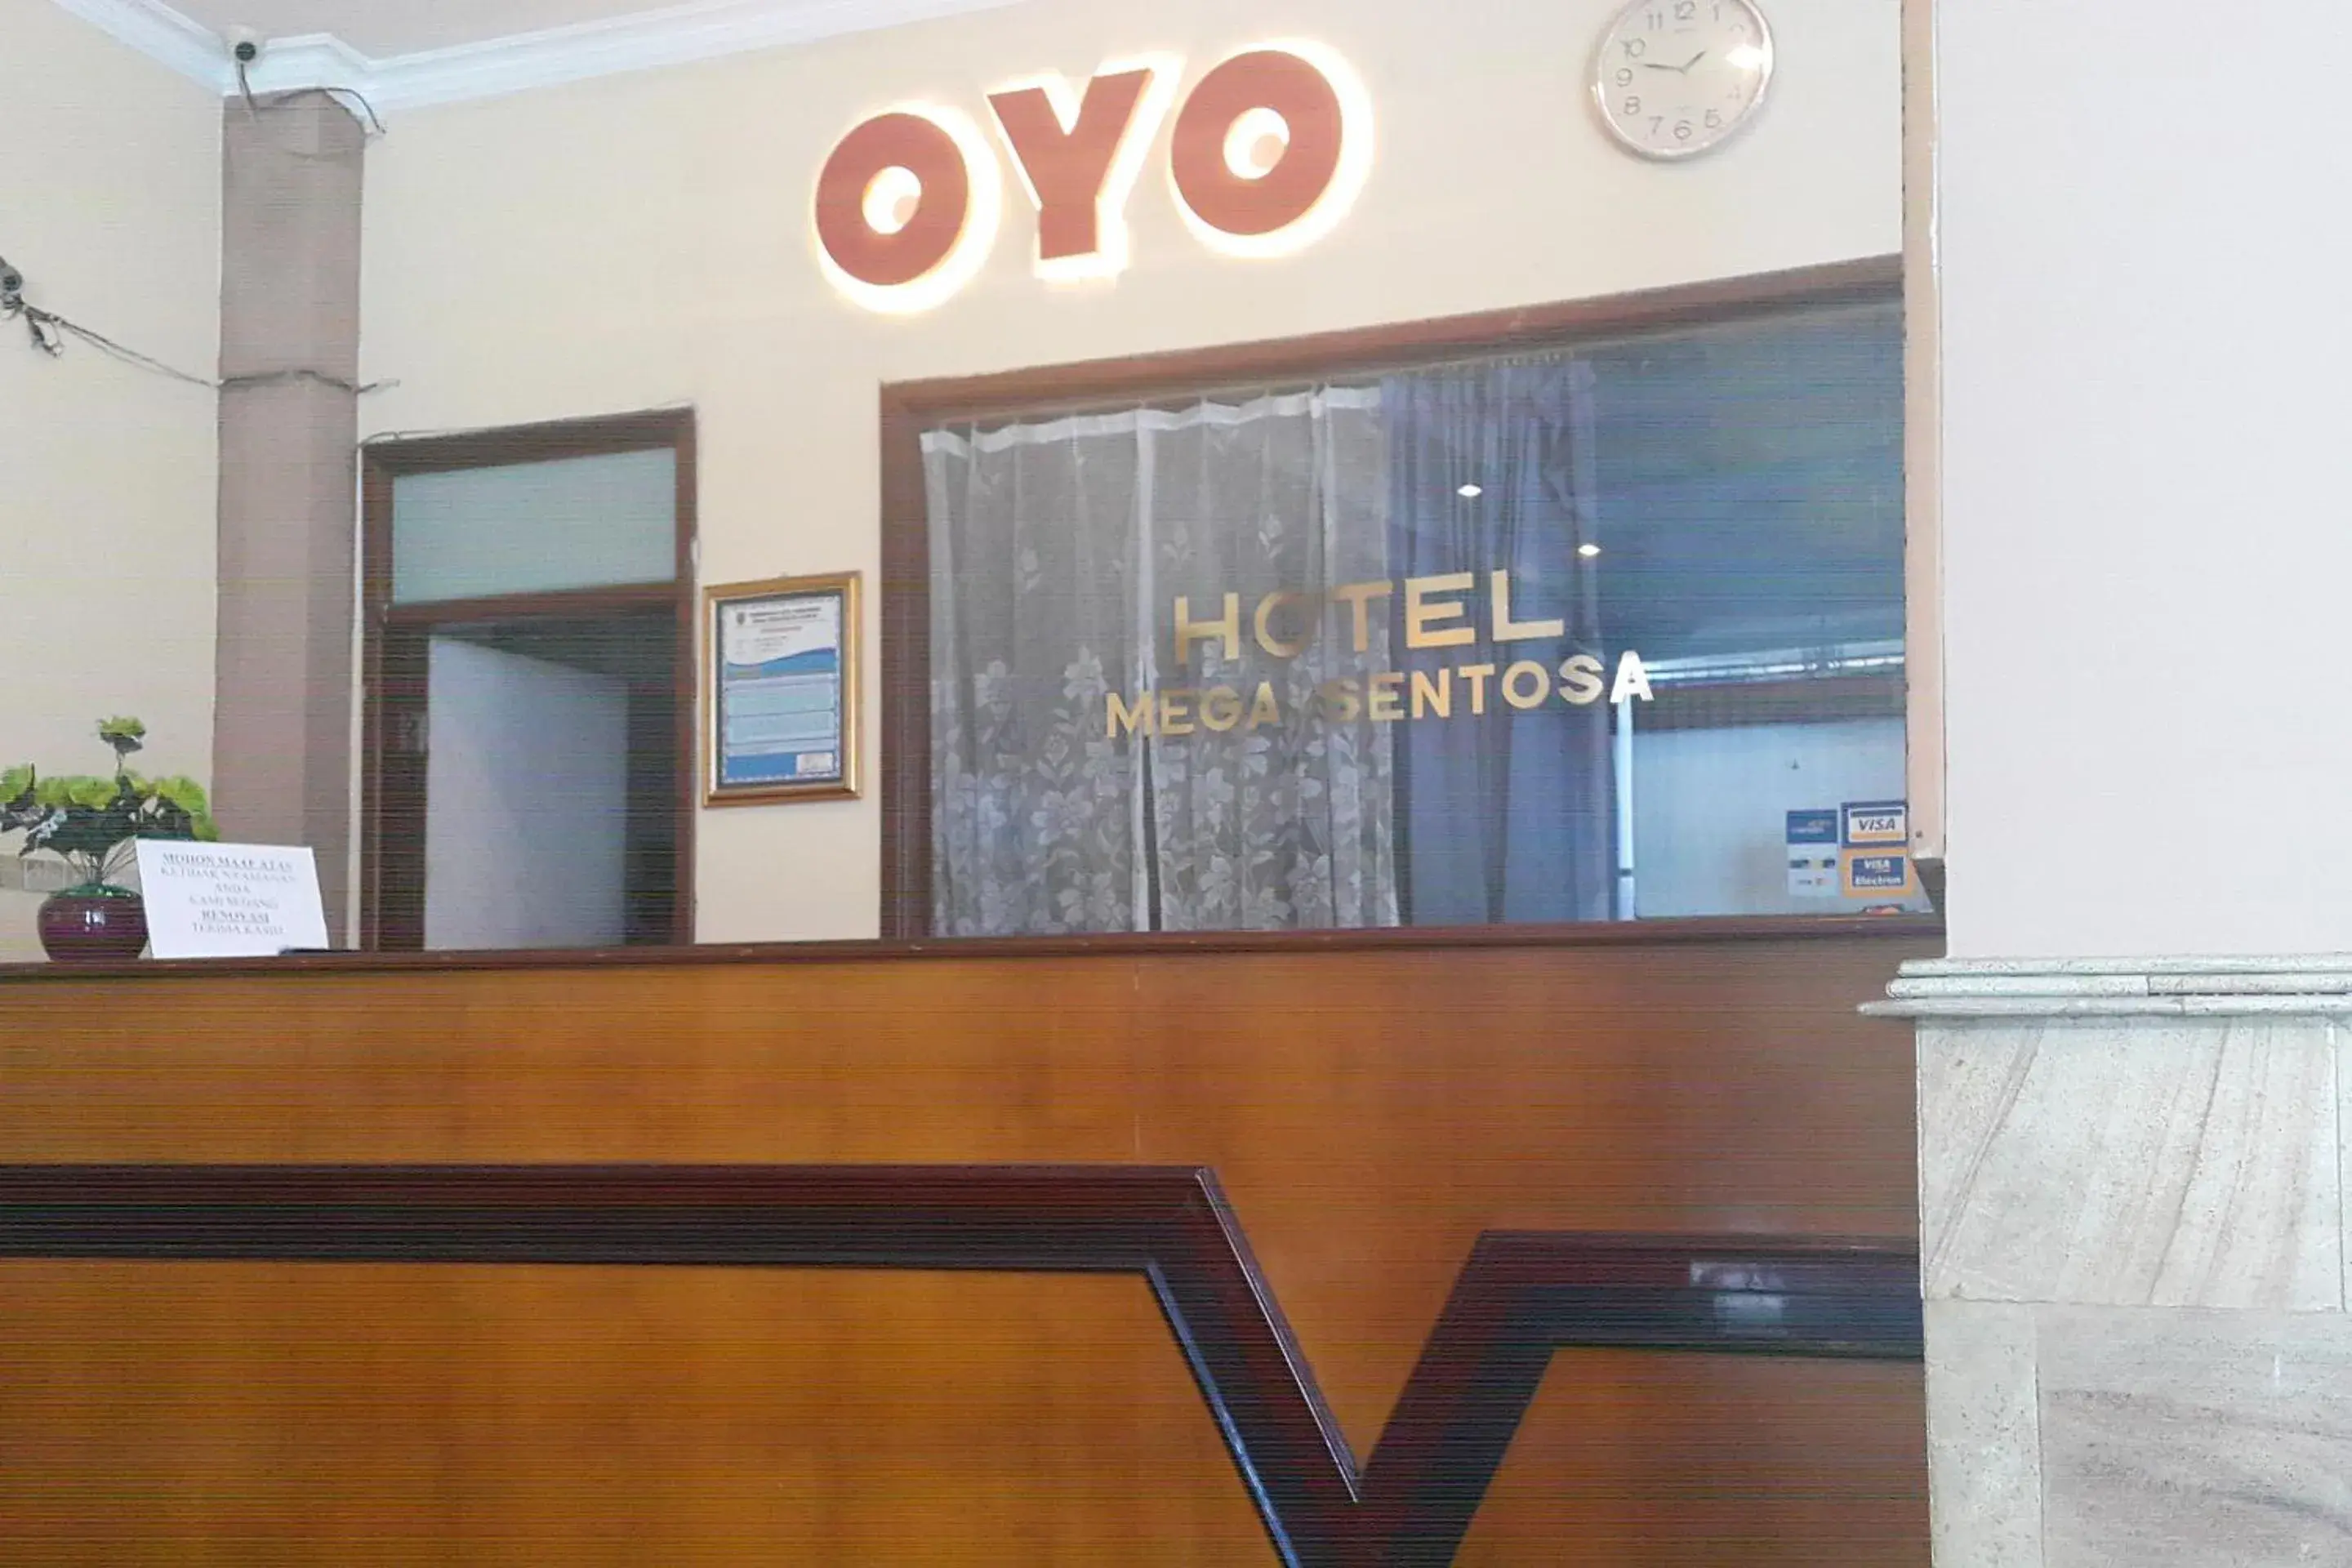 Lobby or reception in OYO 1088 Hotel Mega Sentosa